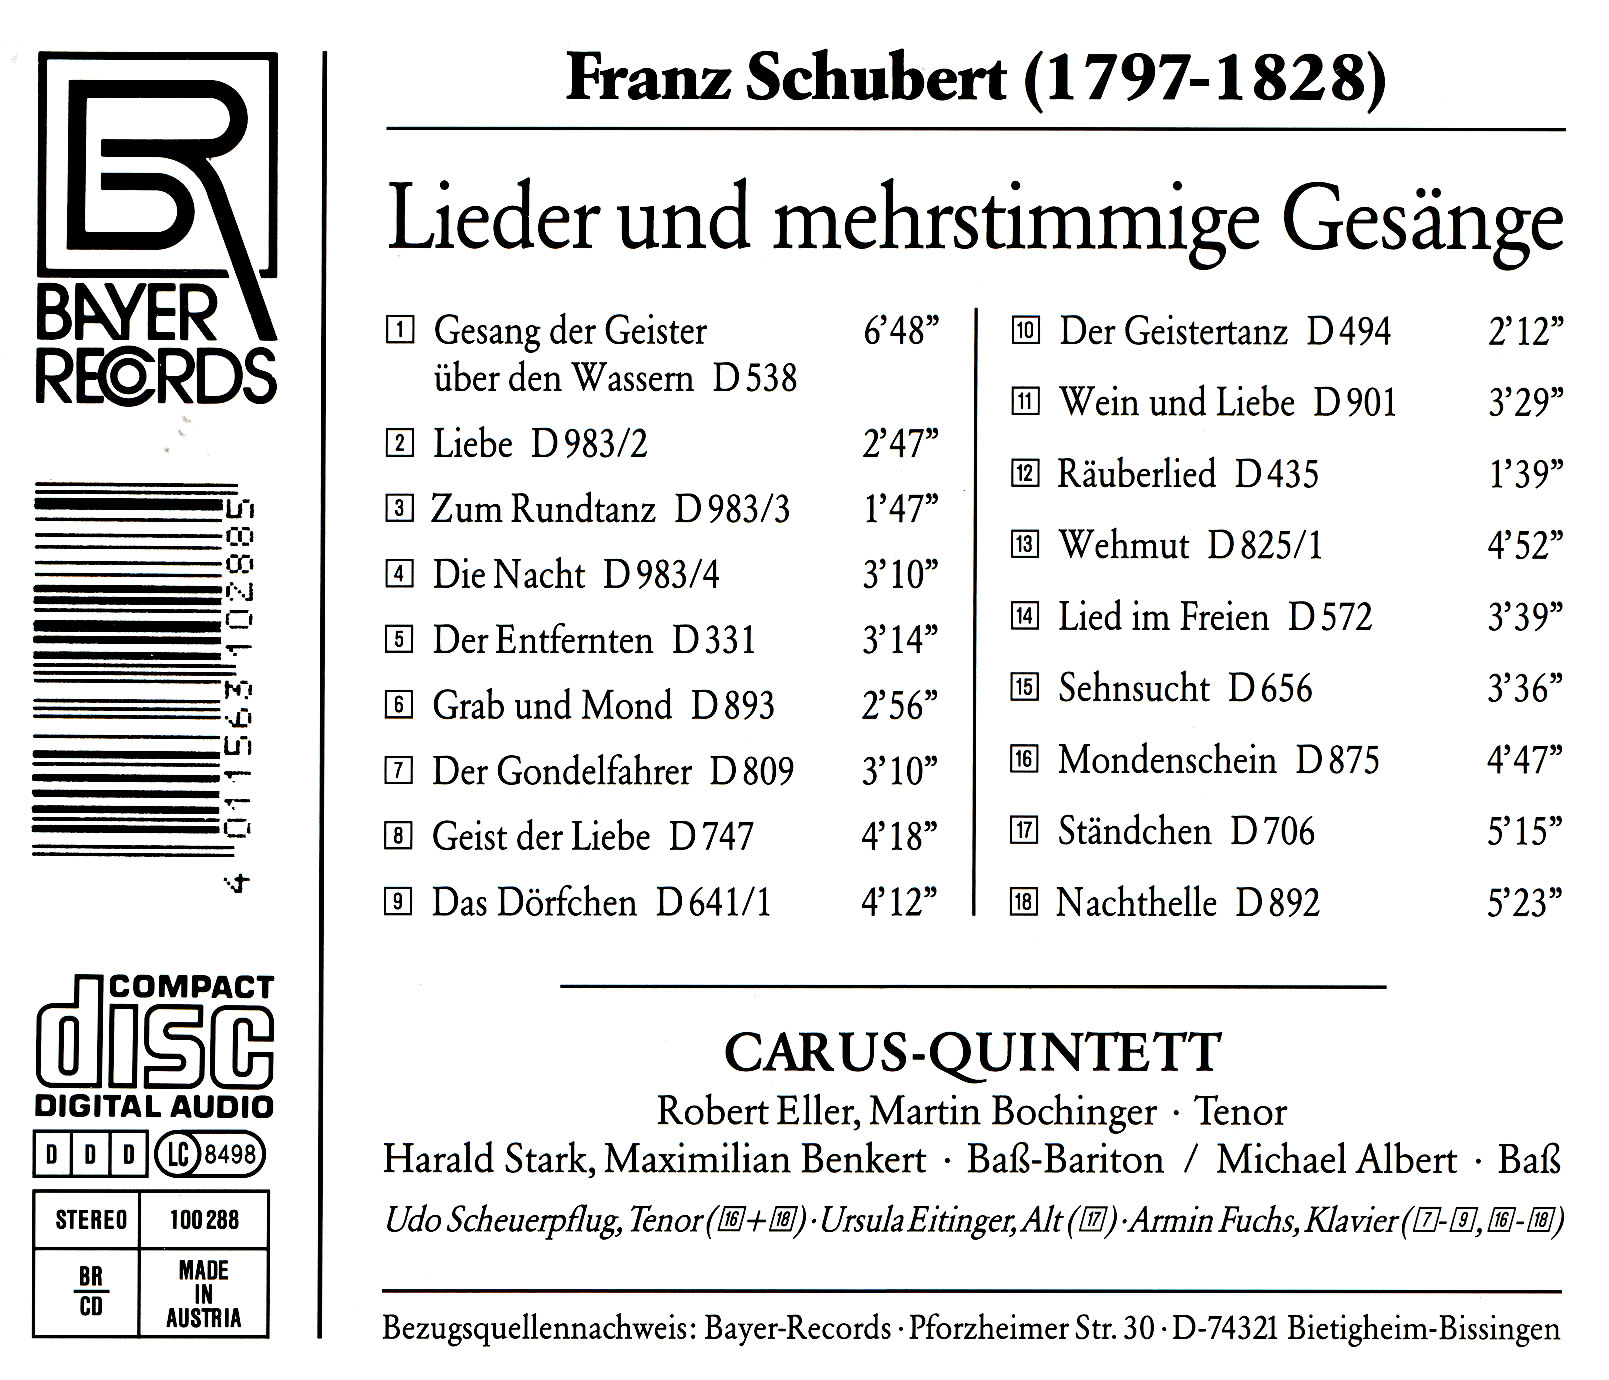 Franz Schubert - Lieder/mehrst. Gesänge